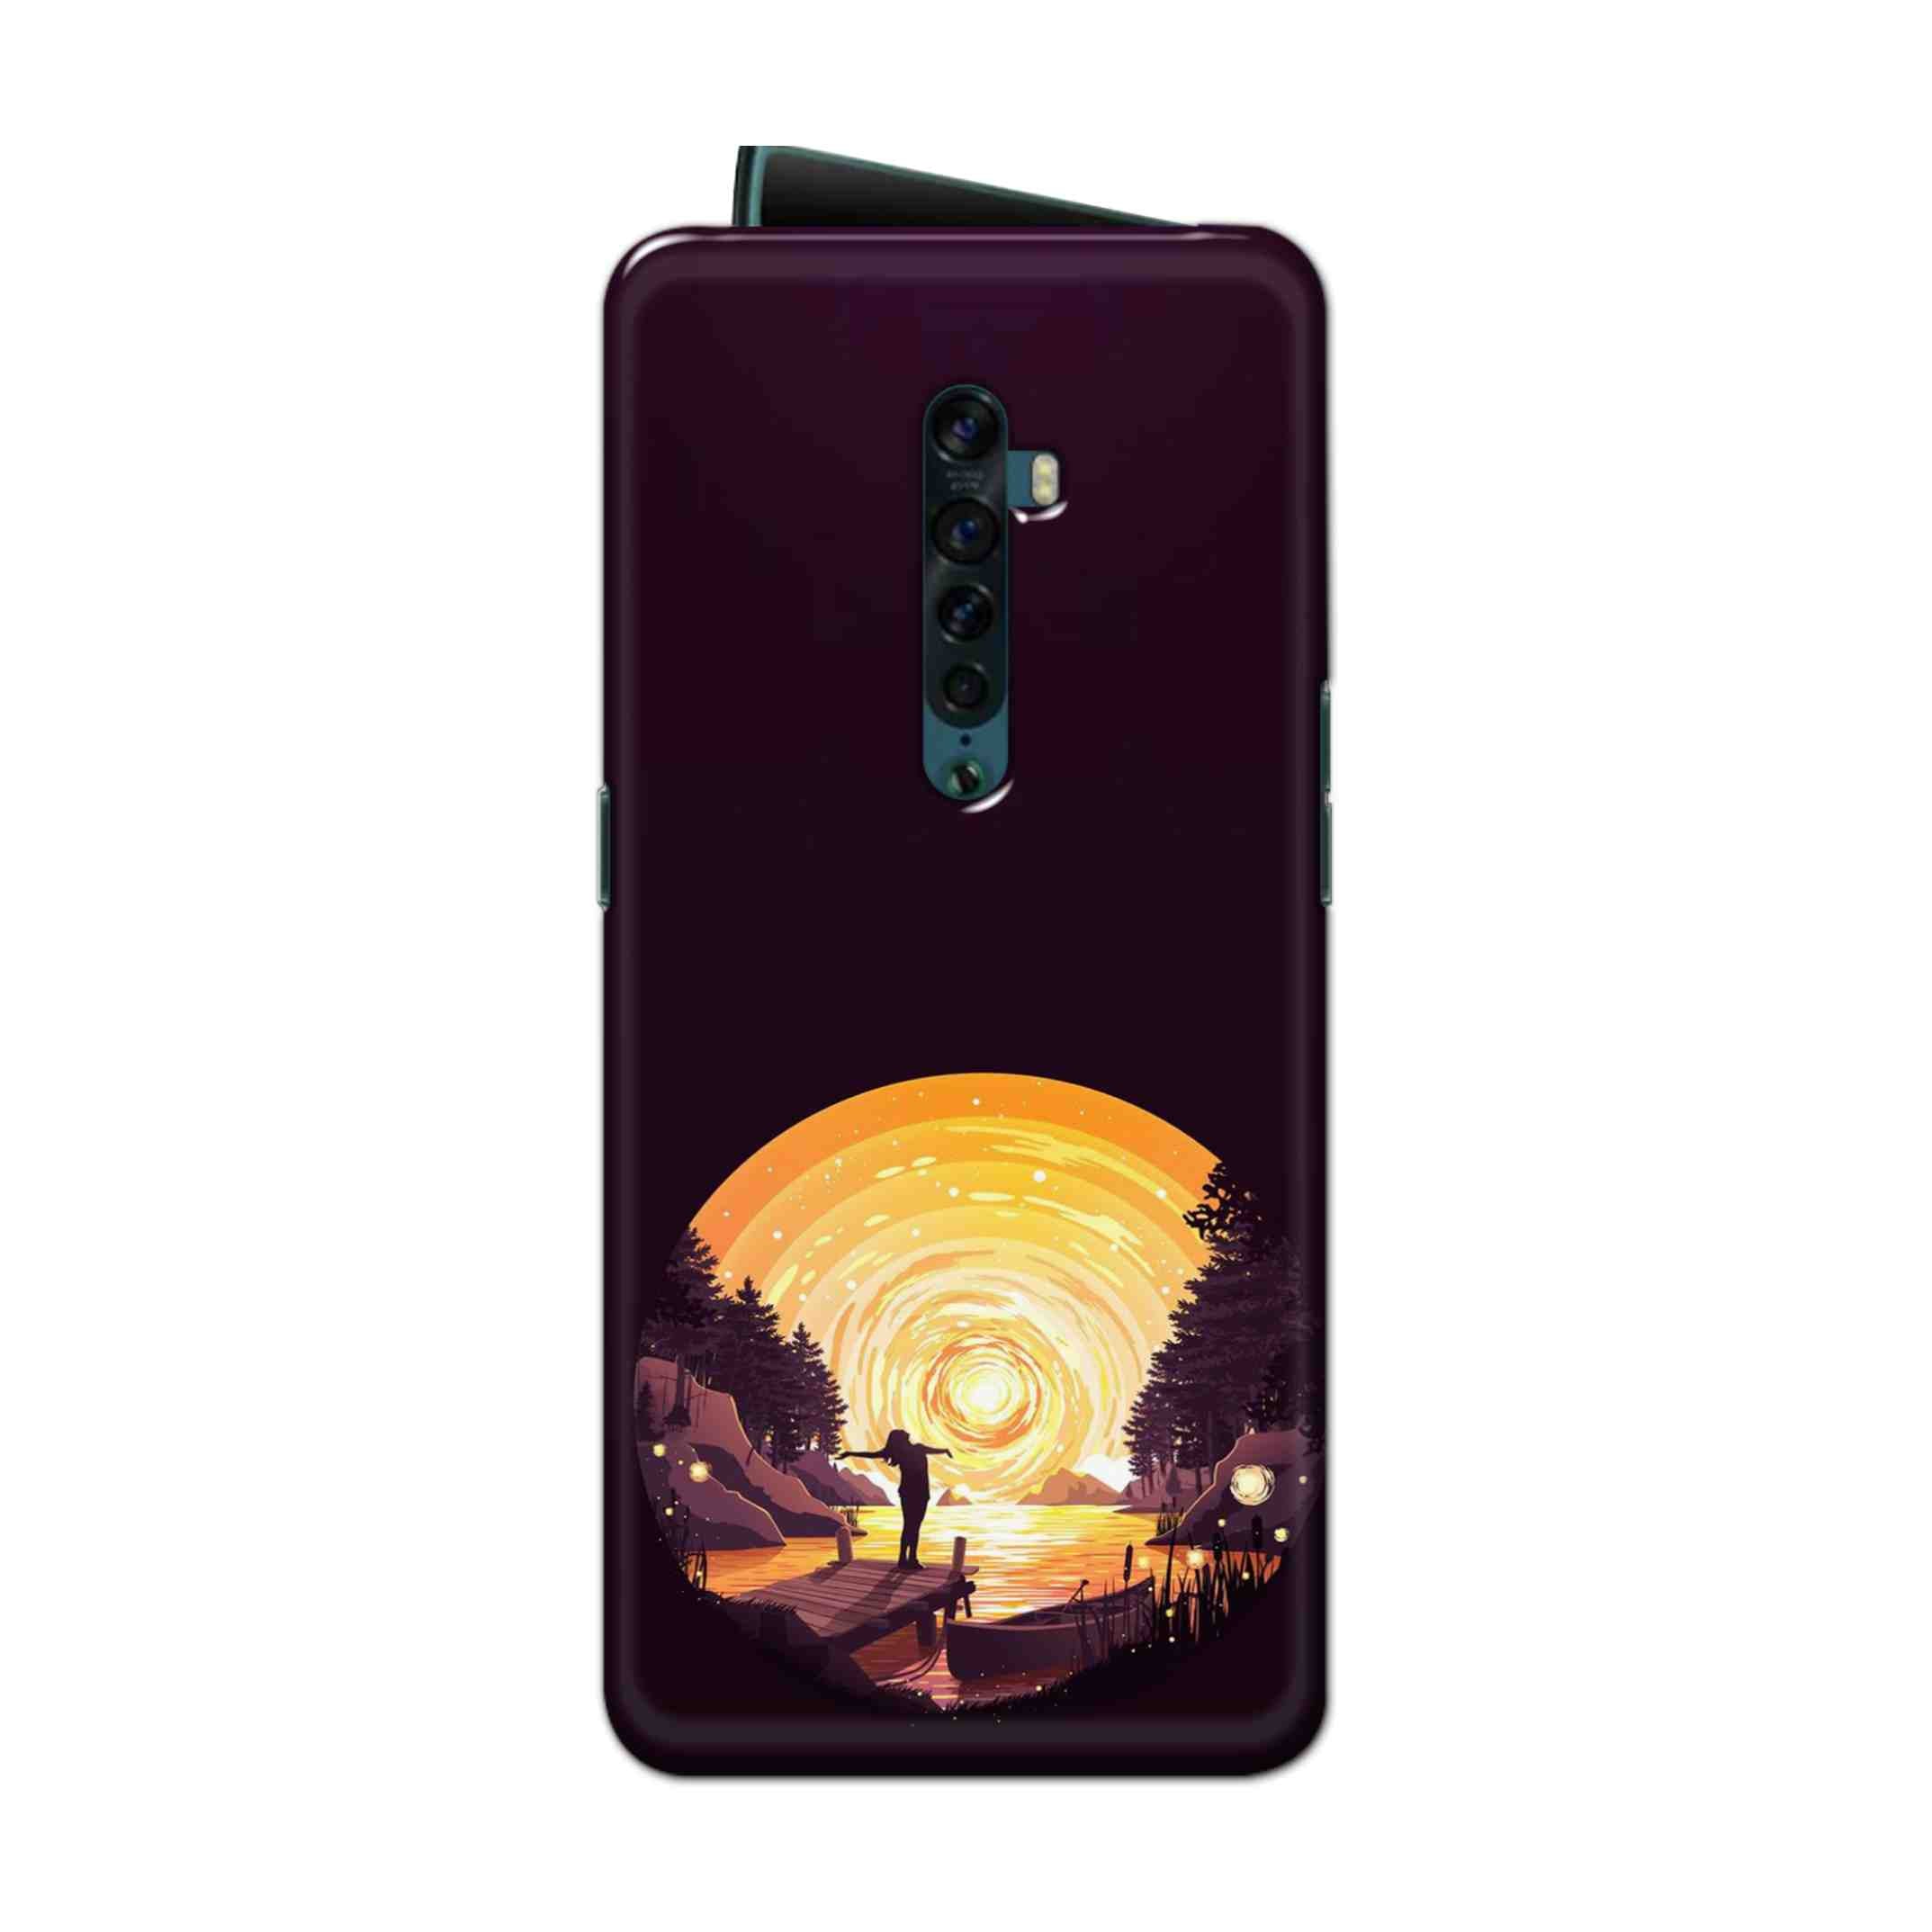 Buy Night Sunrise Hard Back Mobile Phone Case Cover For Oppo Reno 2 Online